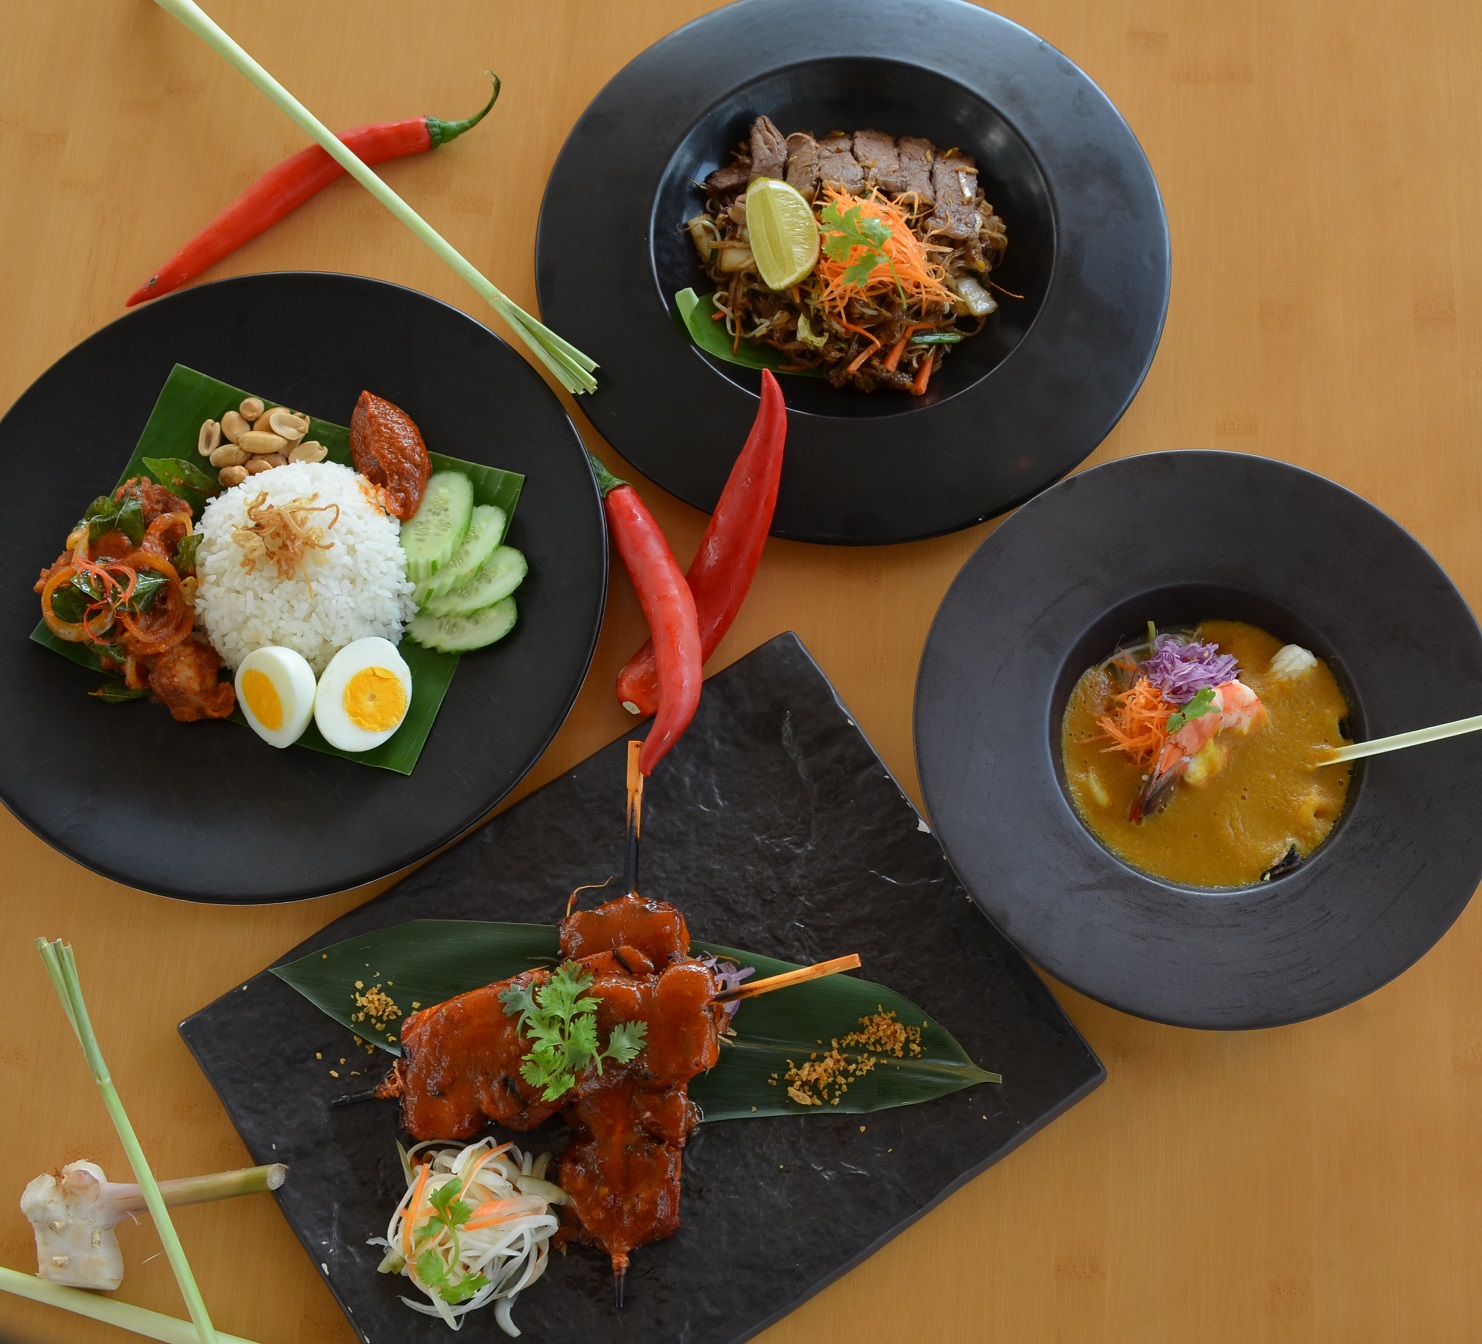 منتجع سانت ريجيس السعديات يعلن عن تقديم أشهى الأطباق الماليزية الجاهزة في مطعم "سونتا P_983h7f8v1